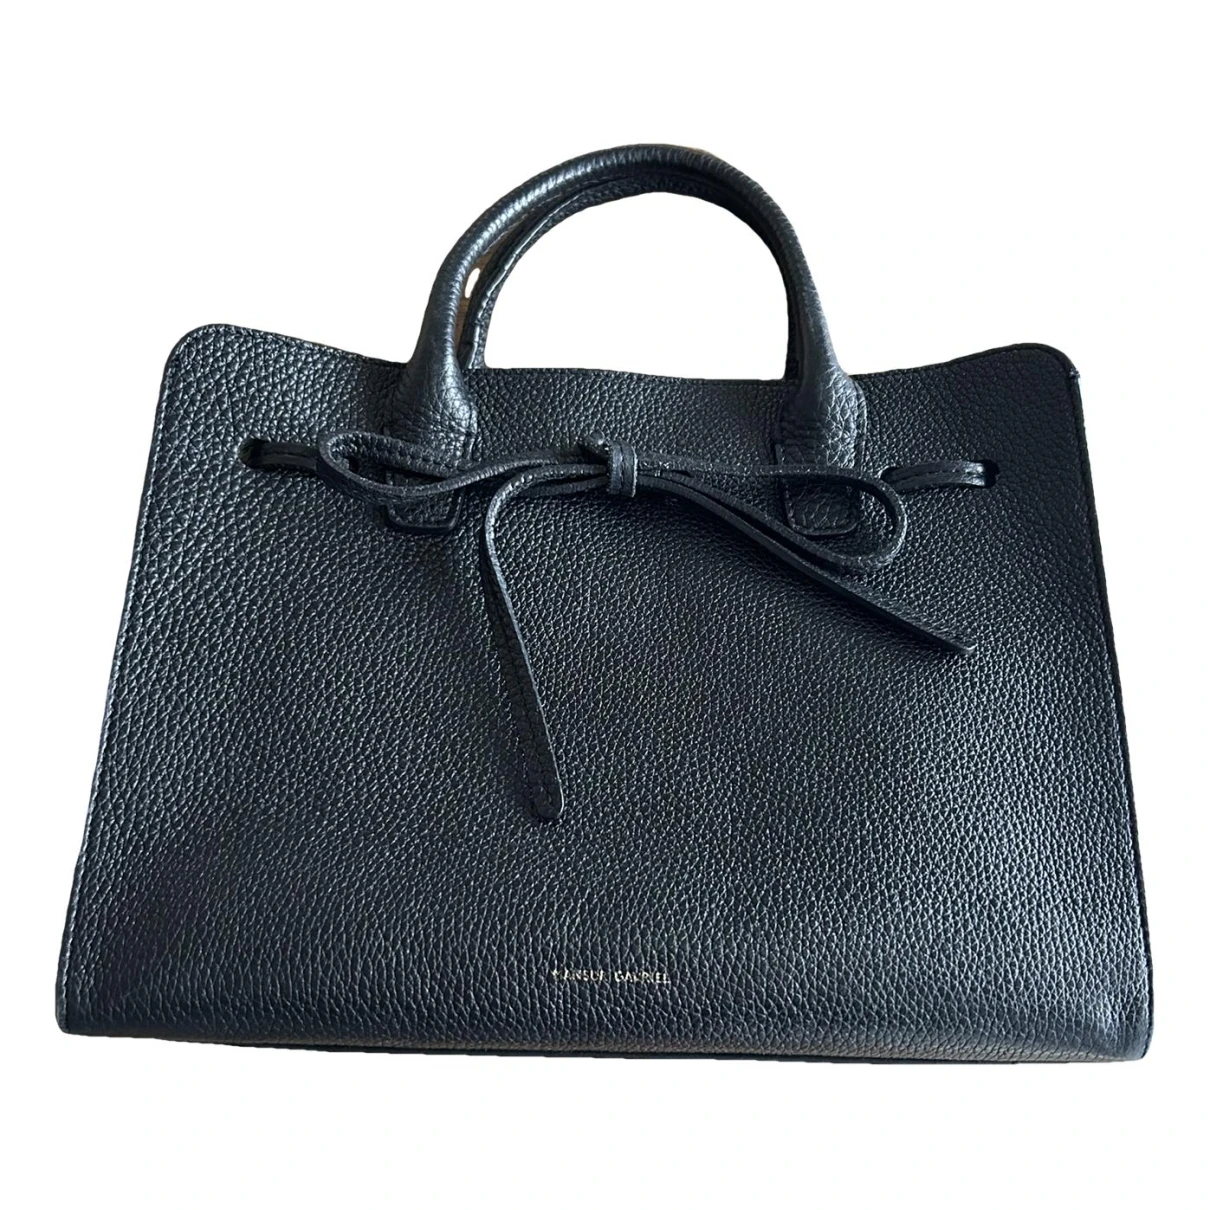 Pre-owned Mansur Gavriel Leather Handbag In Black